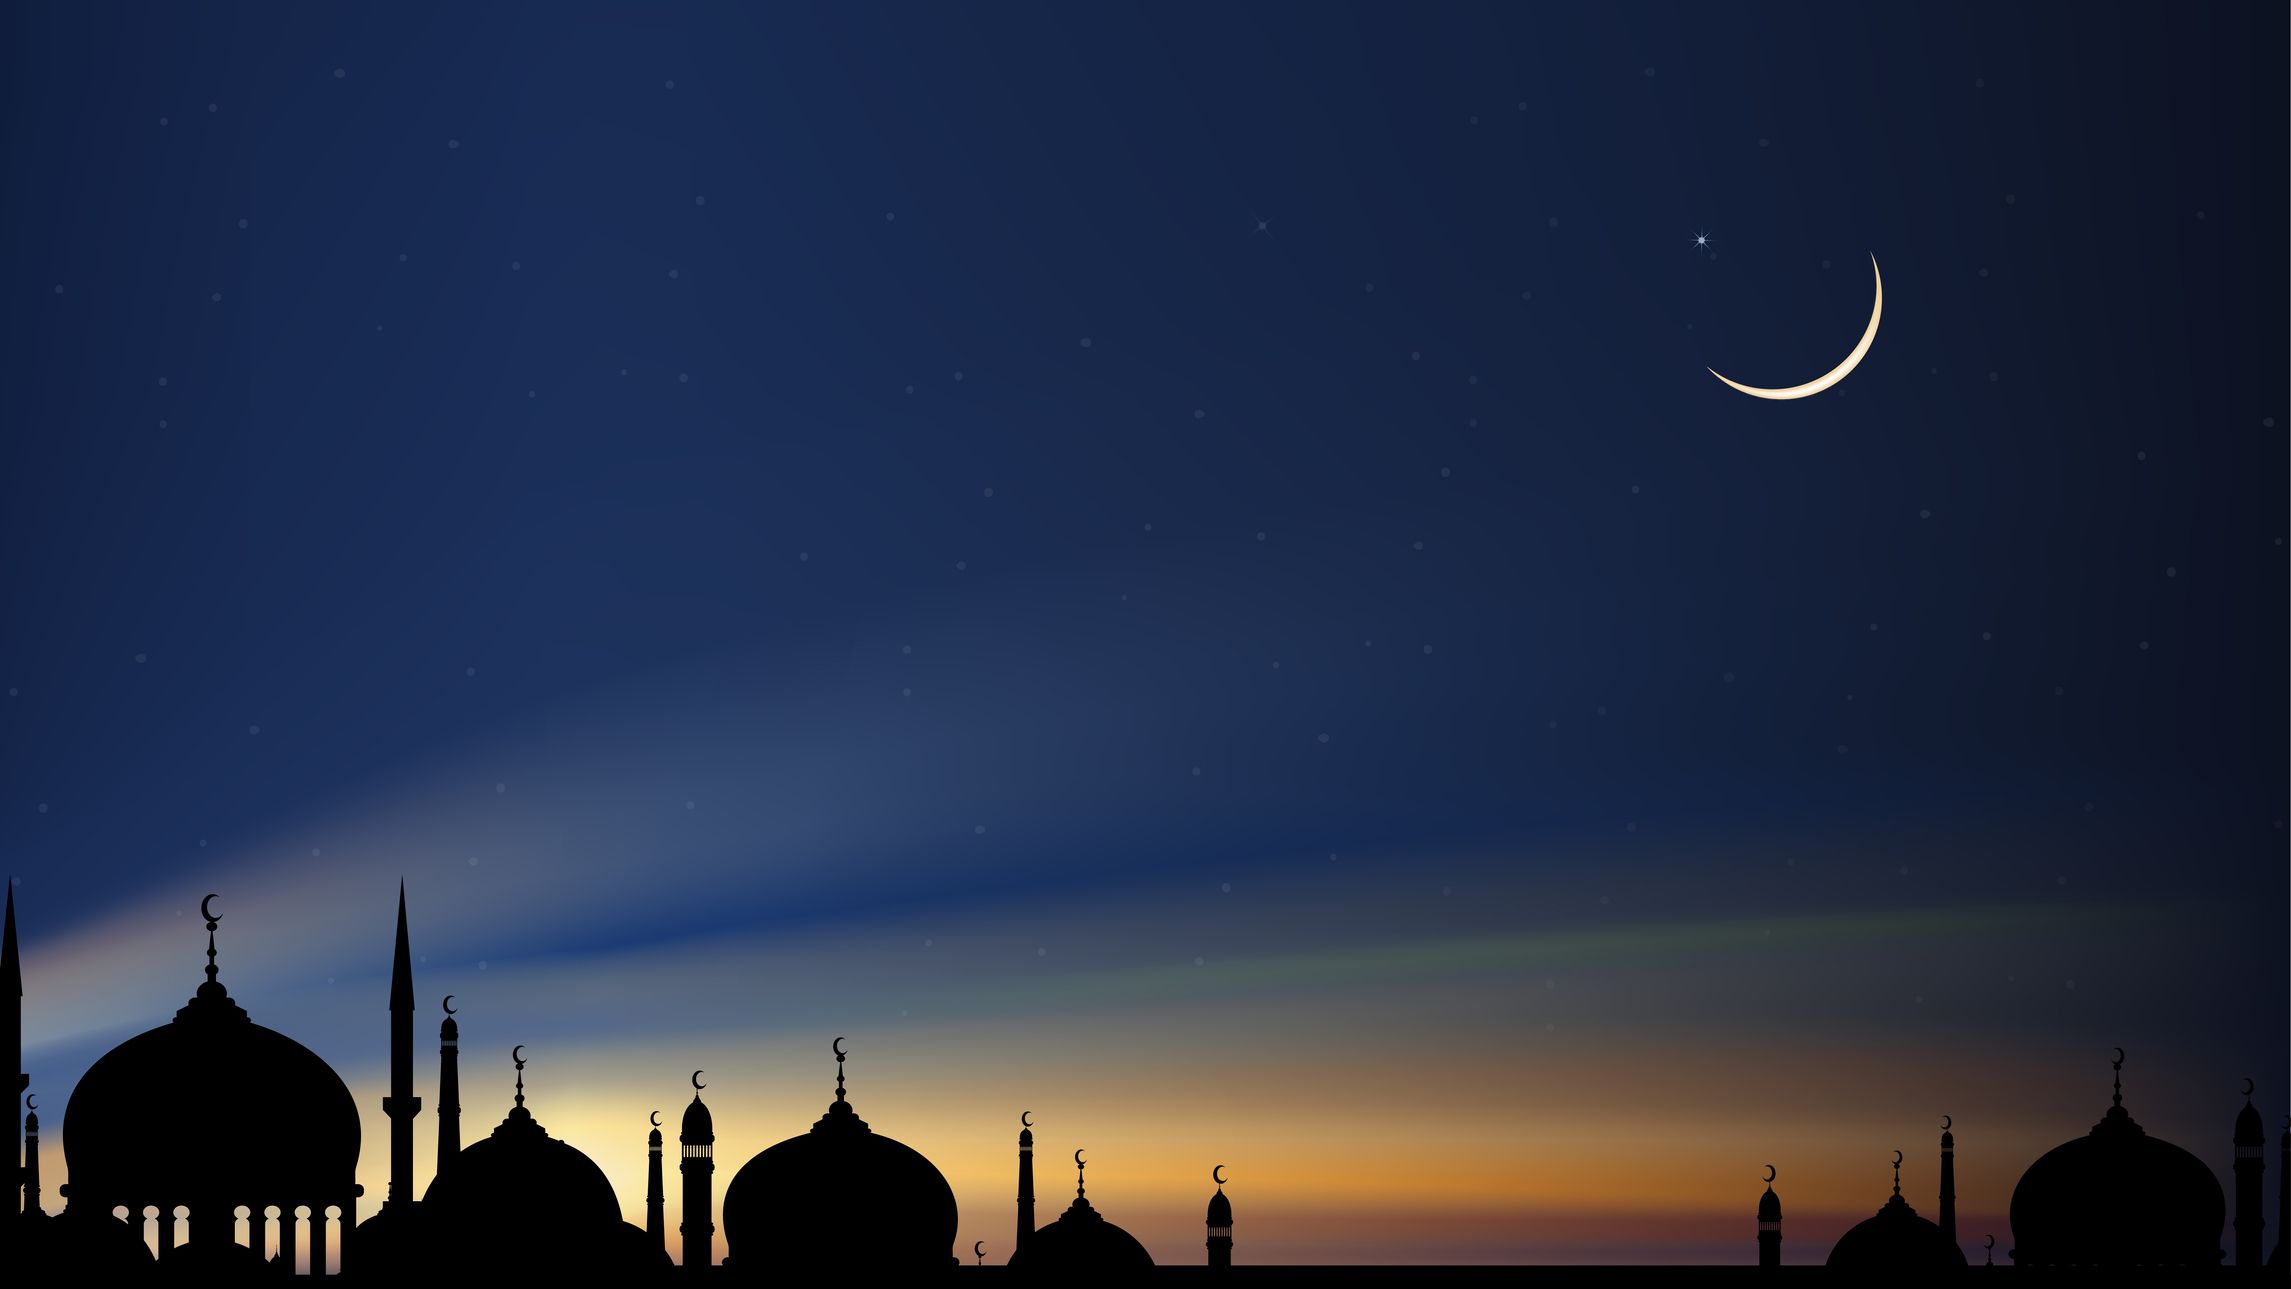 La Lune n'est pas vue et les musulmans célèbrent l'Aïd Al-Fitr mercredi